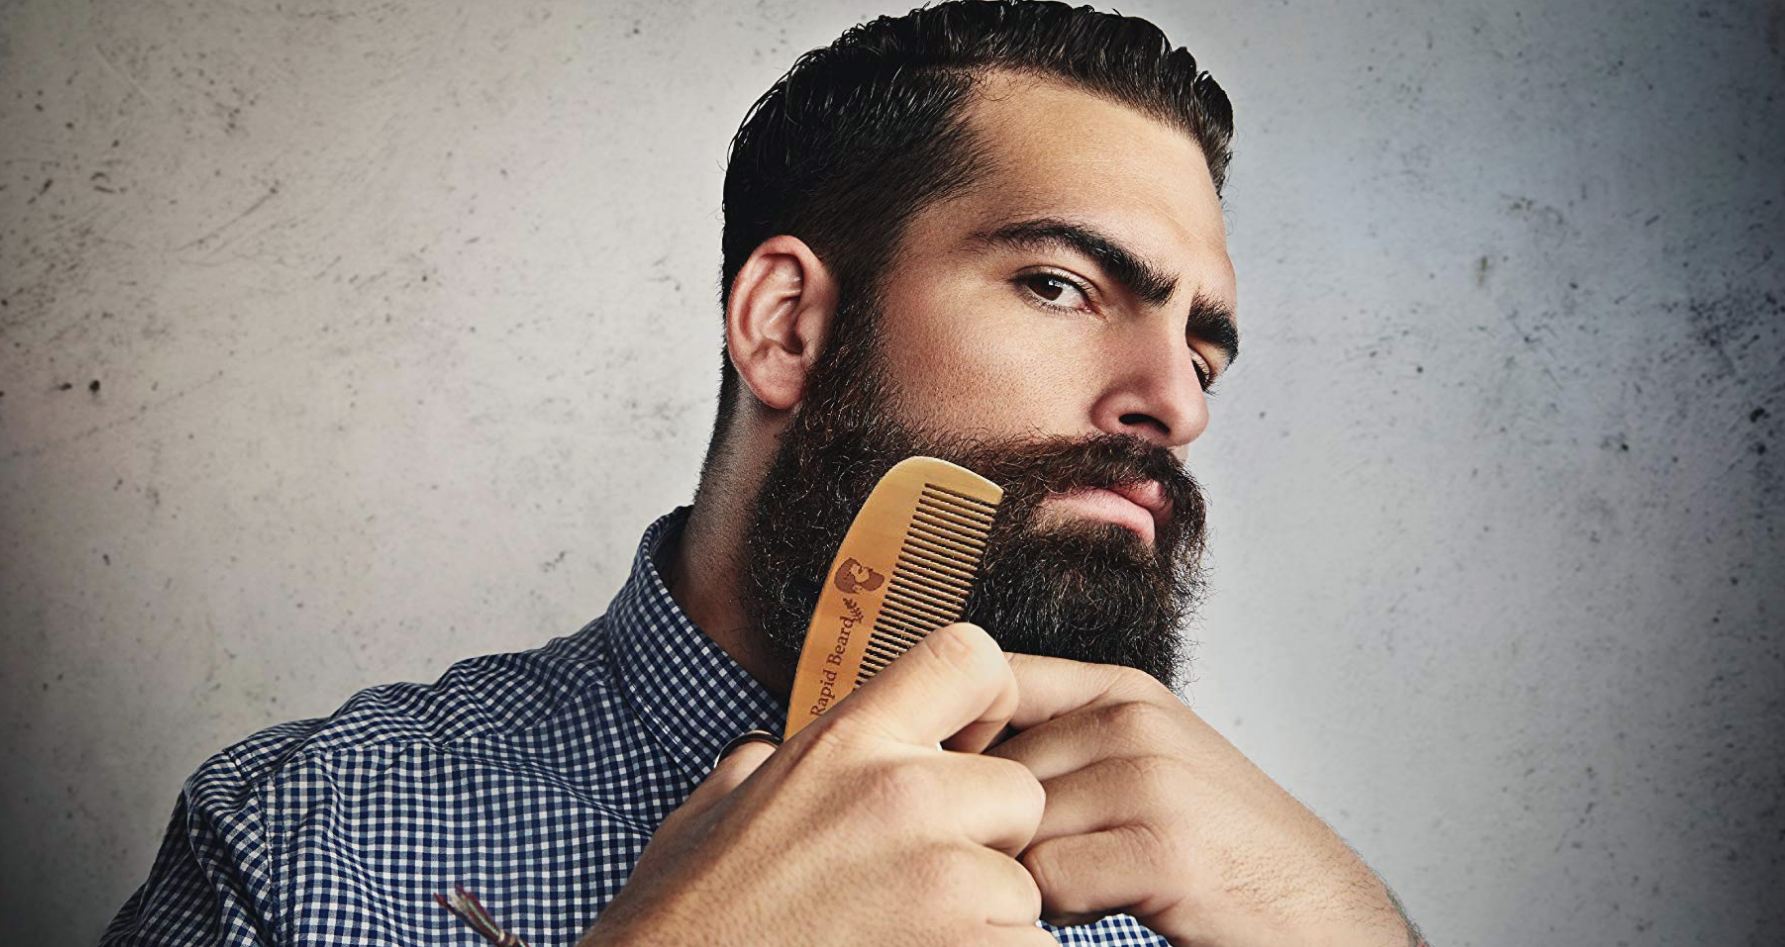 beard grooming kit for beginners